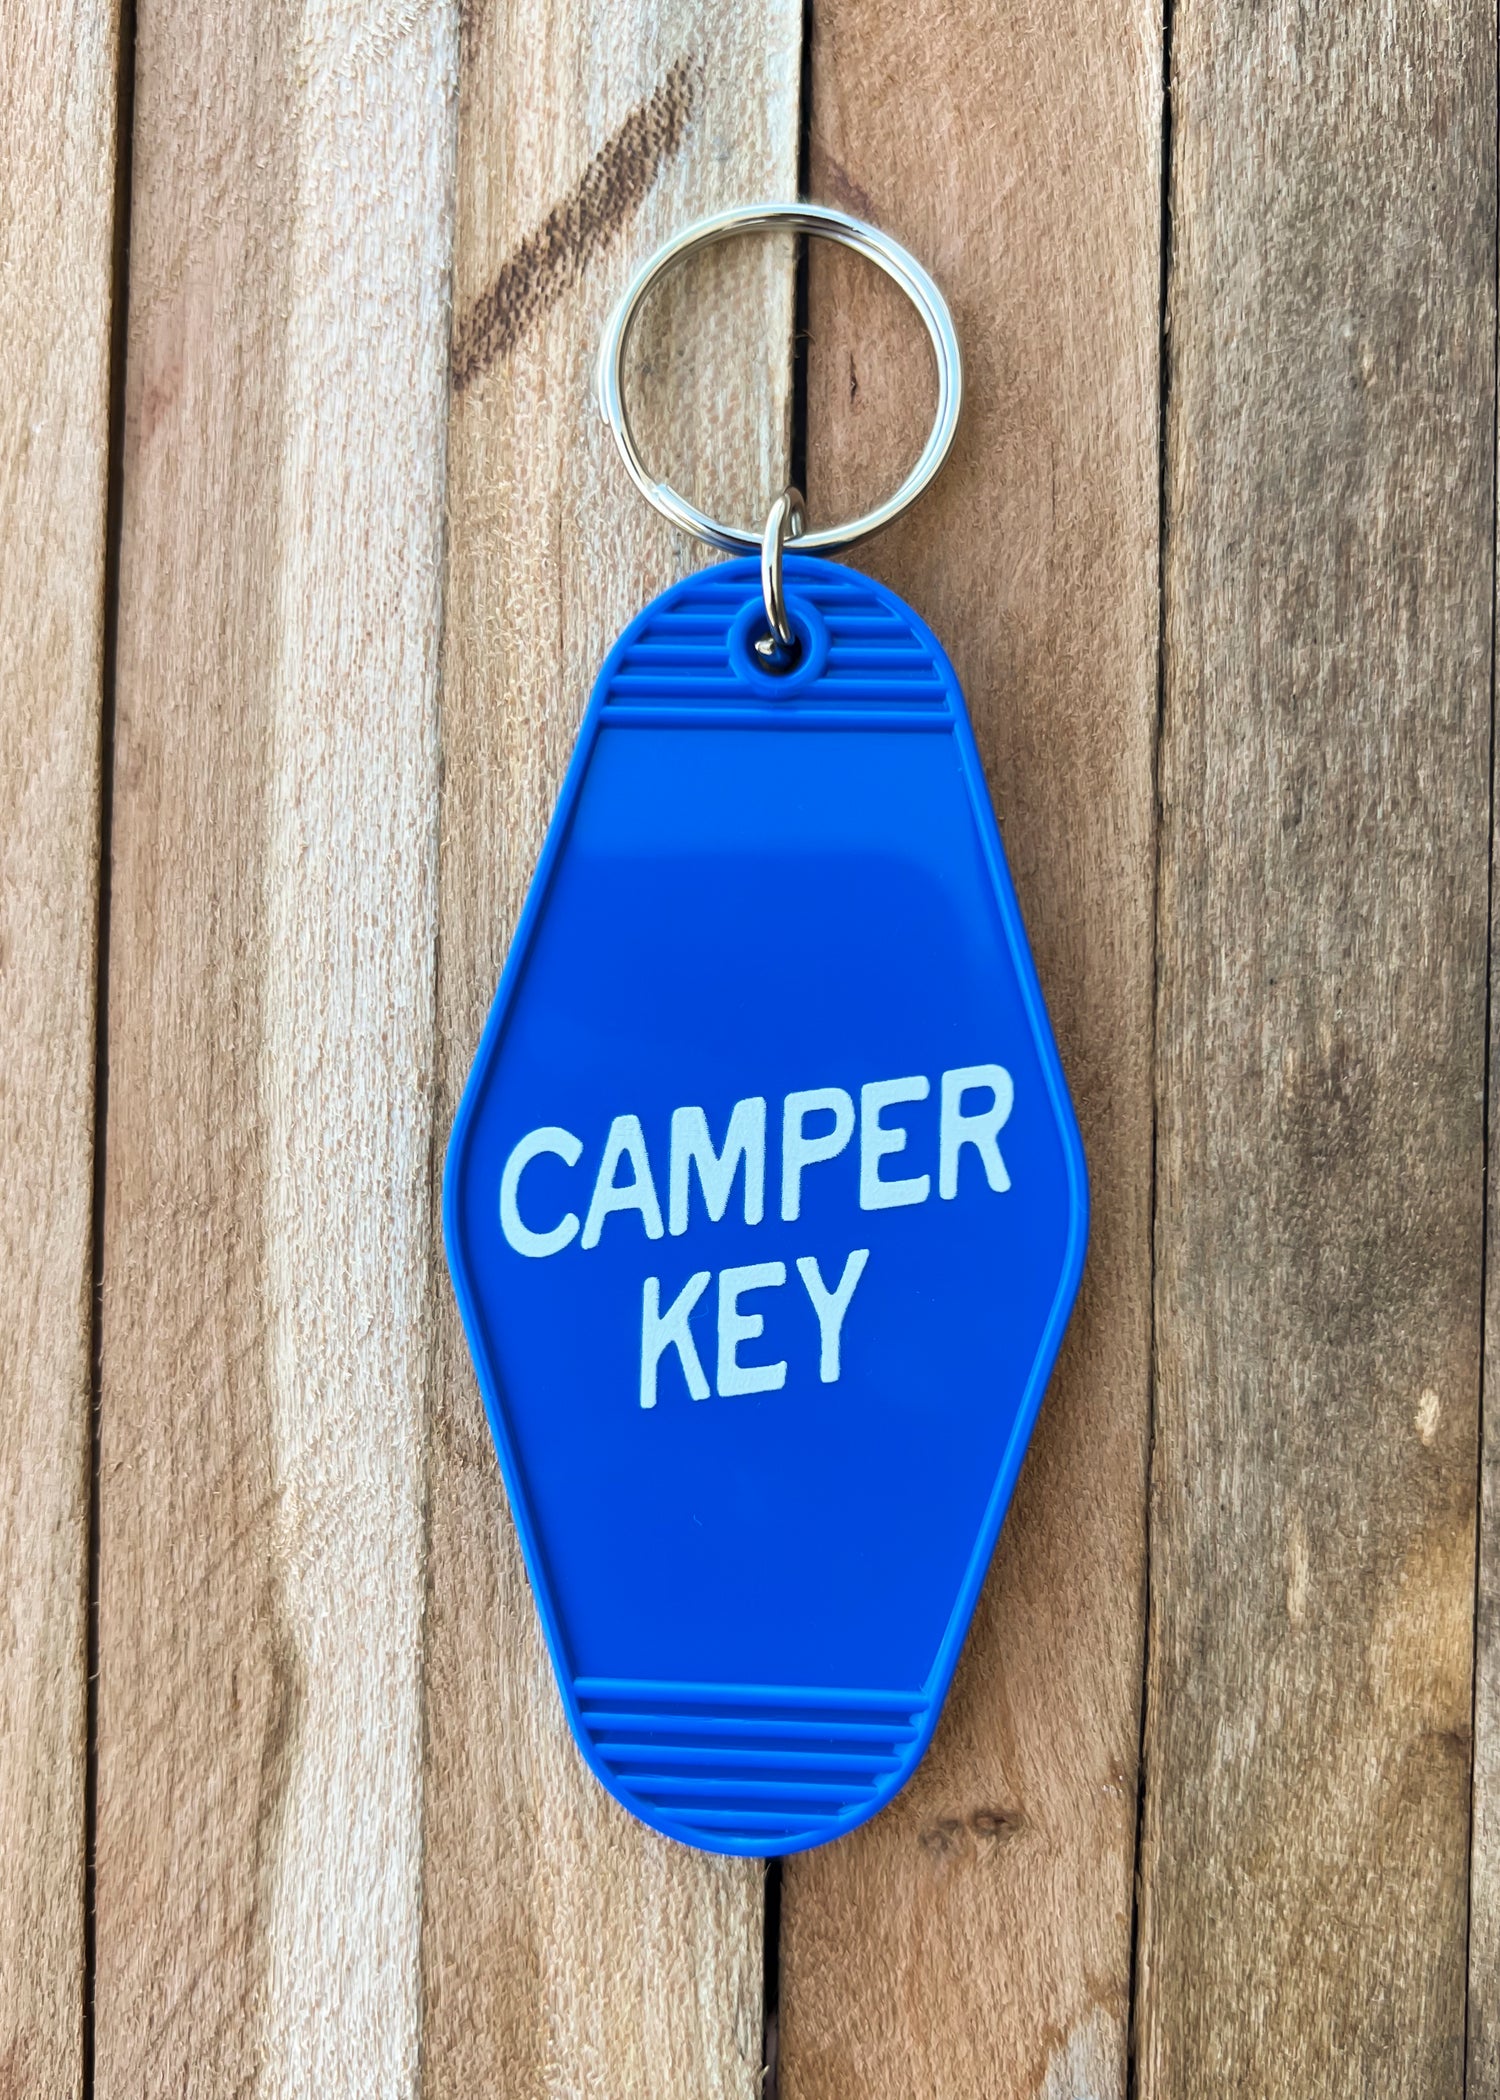 CAMPER KEY - Blue Vintage Motel Keychains